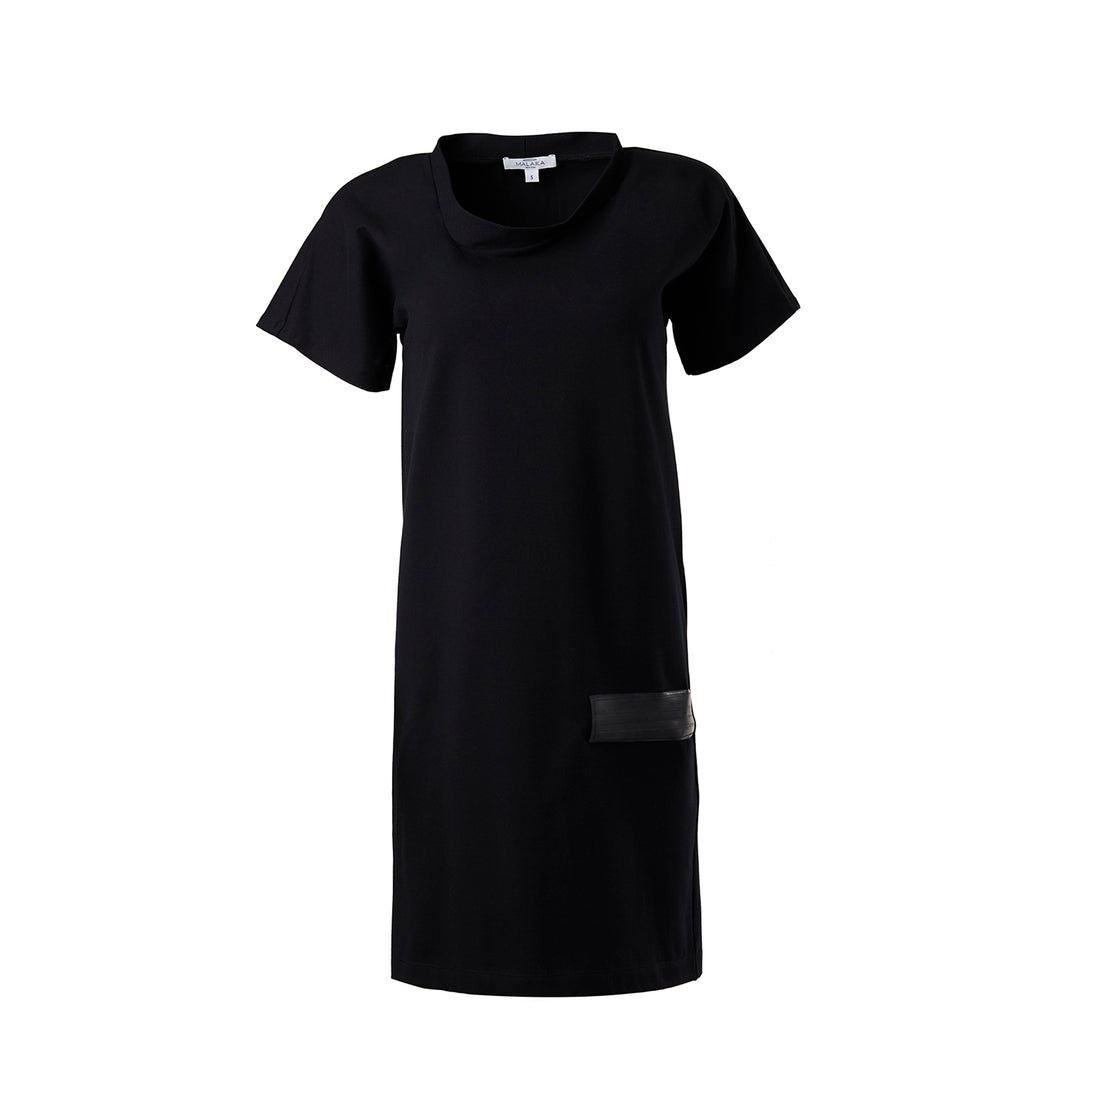 zuurgraad Hick Geslagen vrachtwagen Black Shift Dress | Organic Cotton Dresses | T-Shirt Dress - Malaika New  York